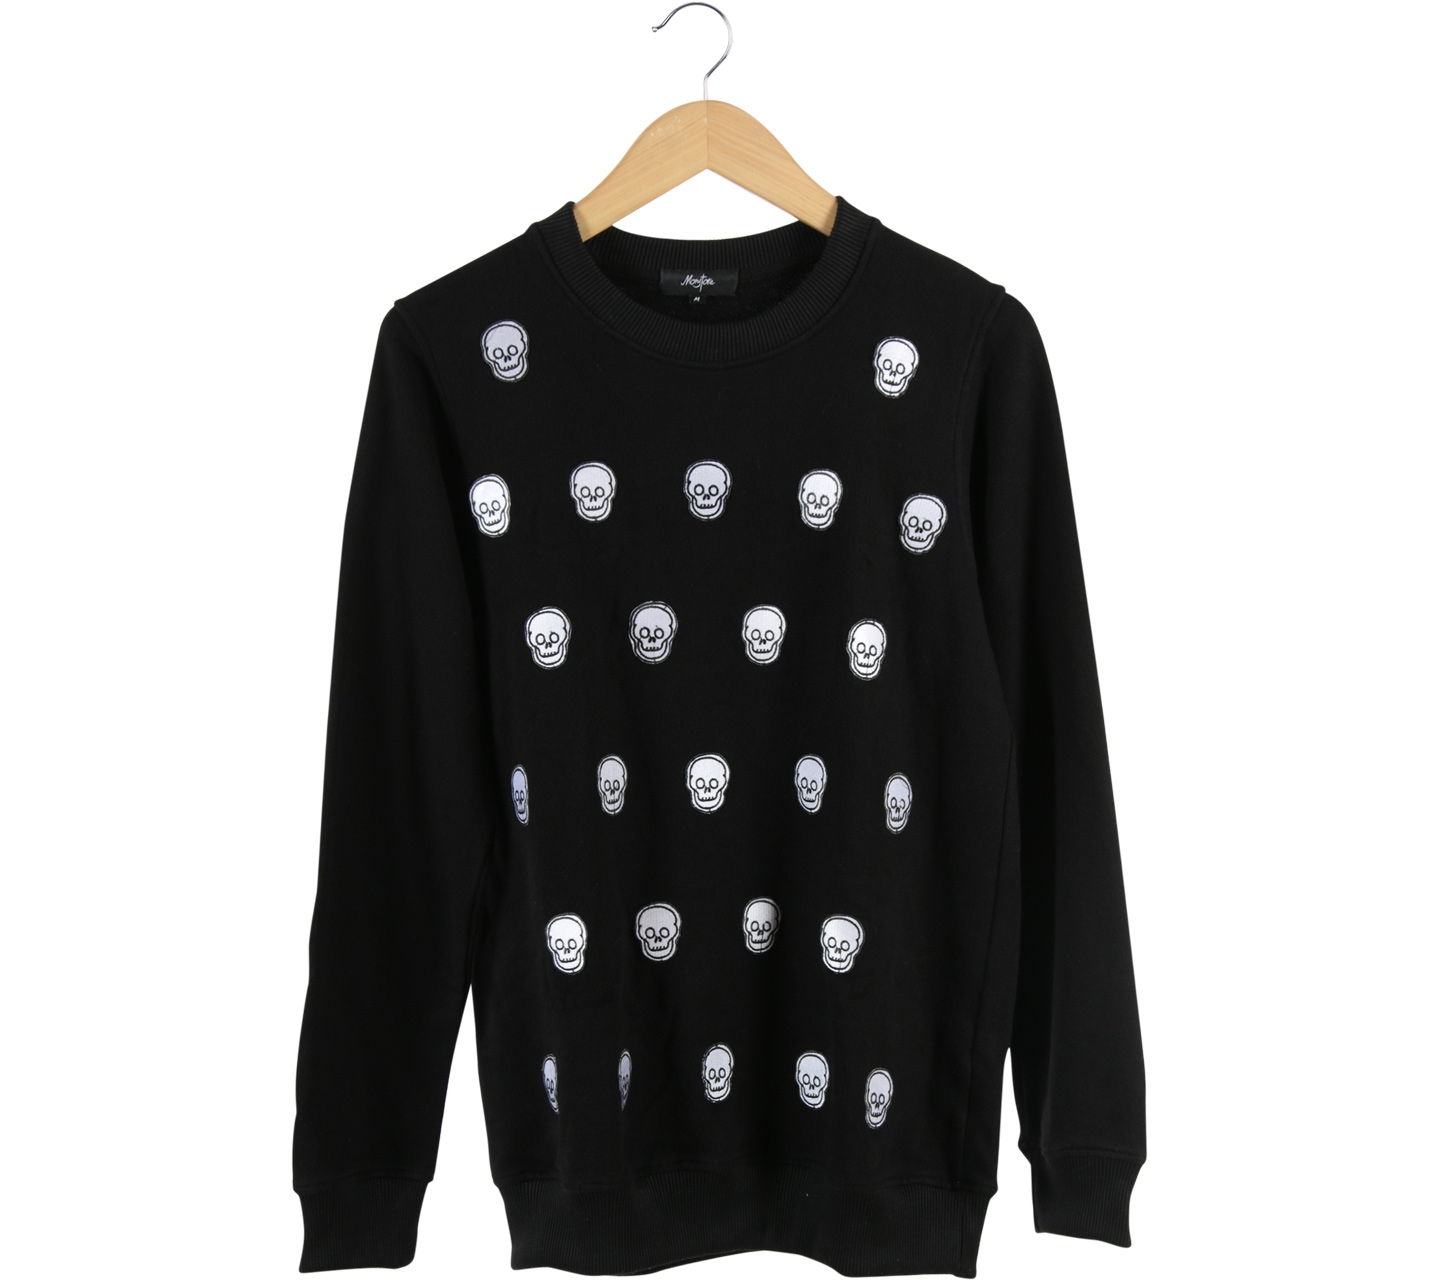 Monstore Black Skull Sweater